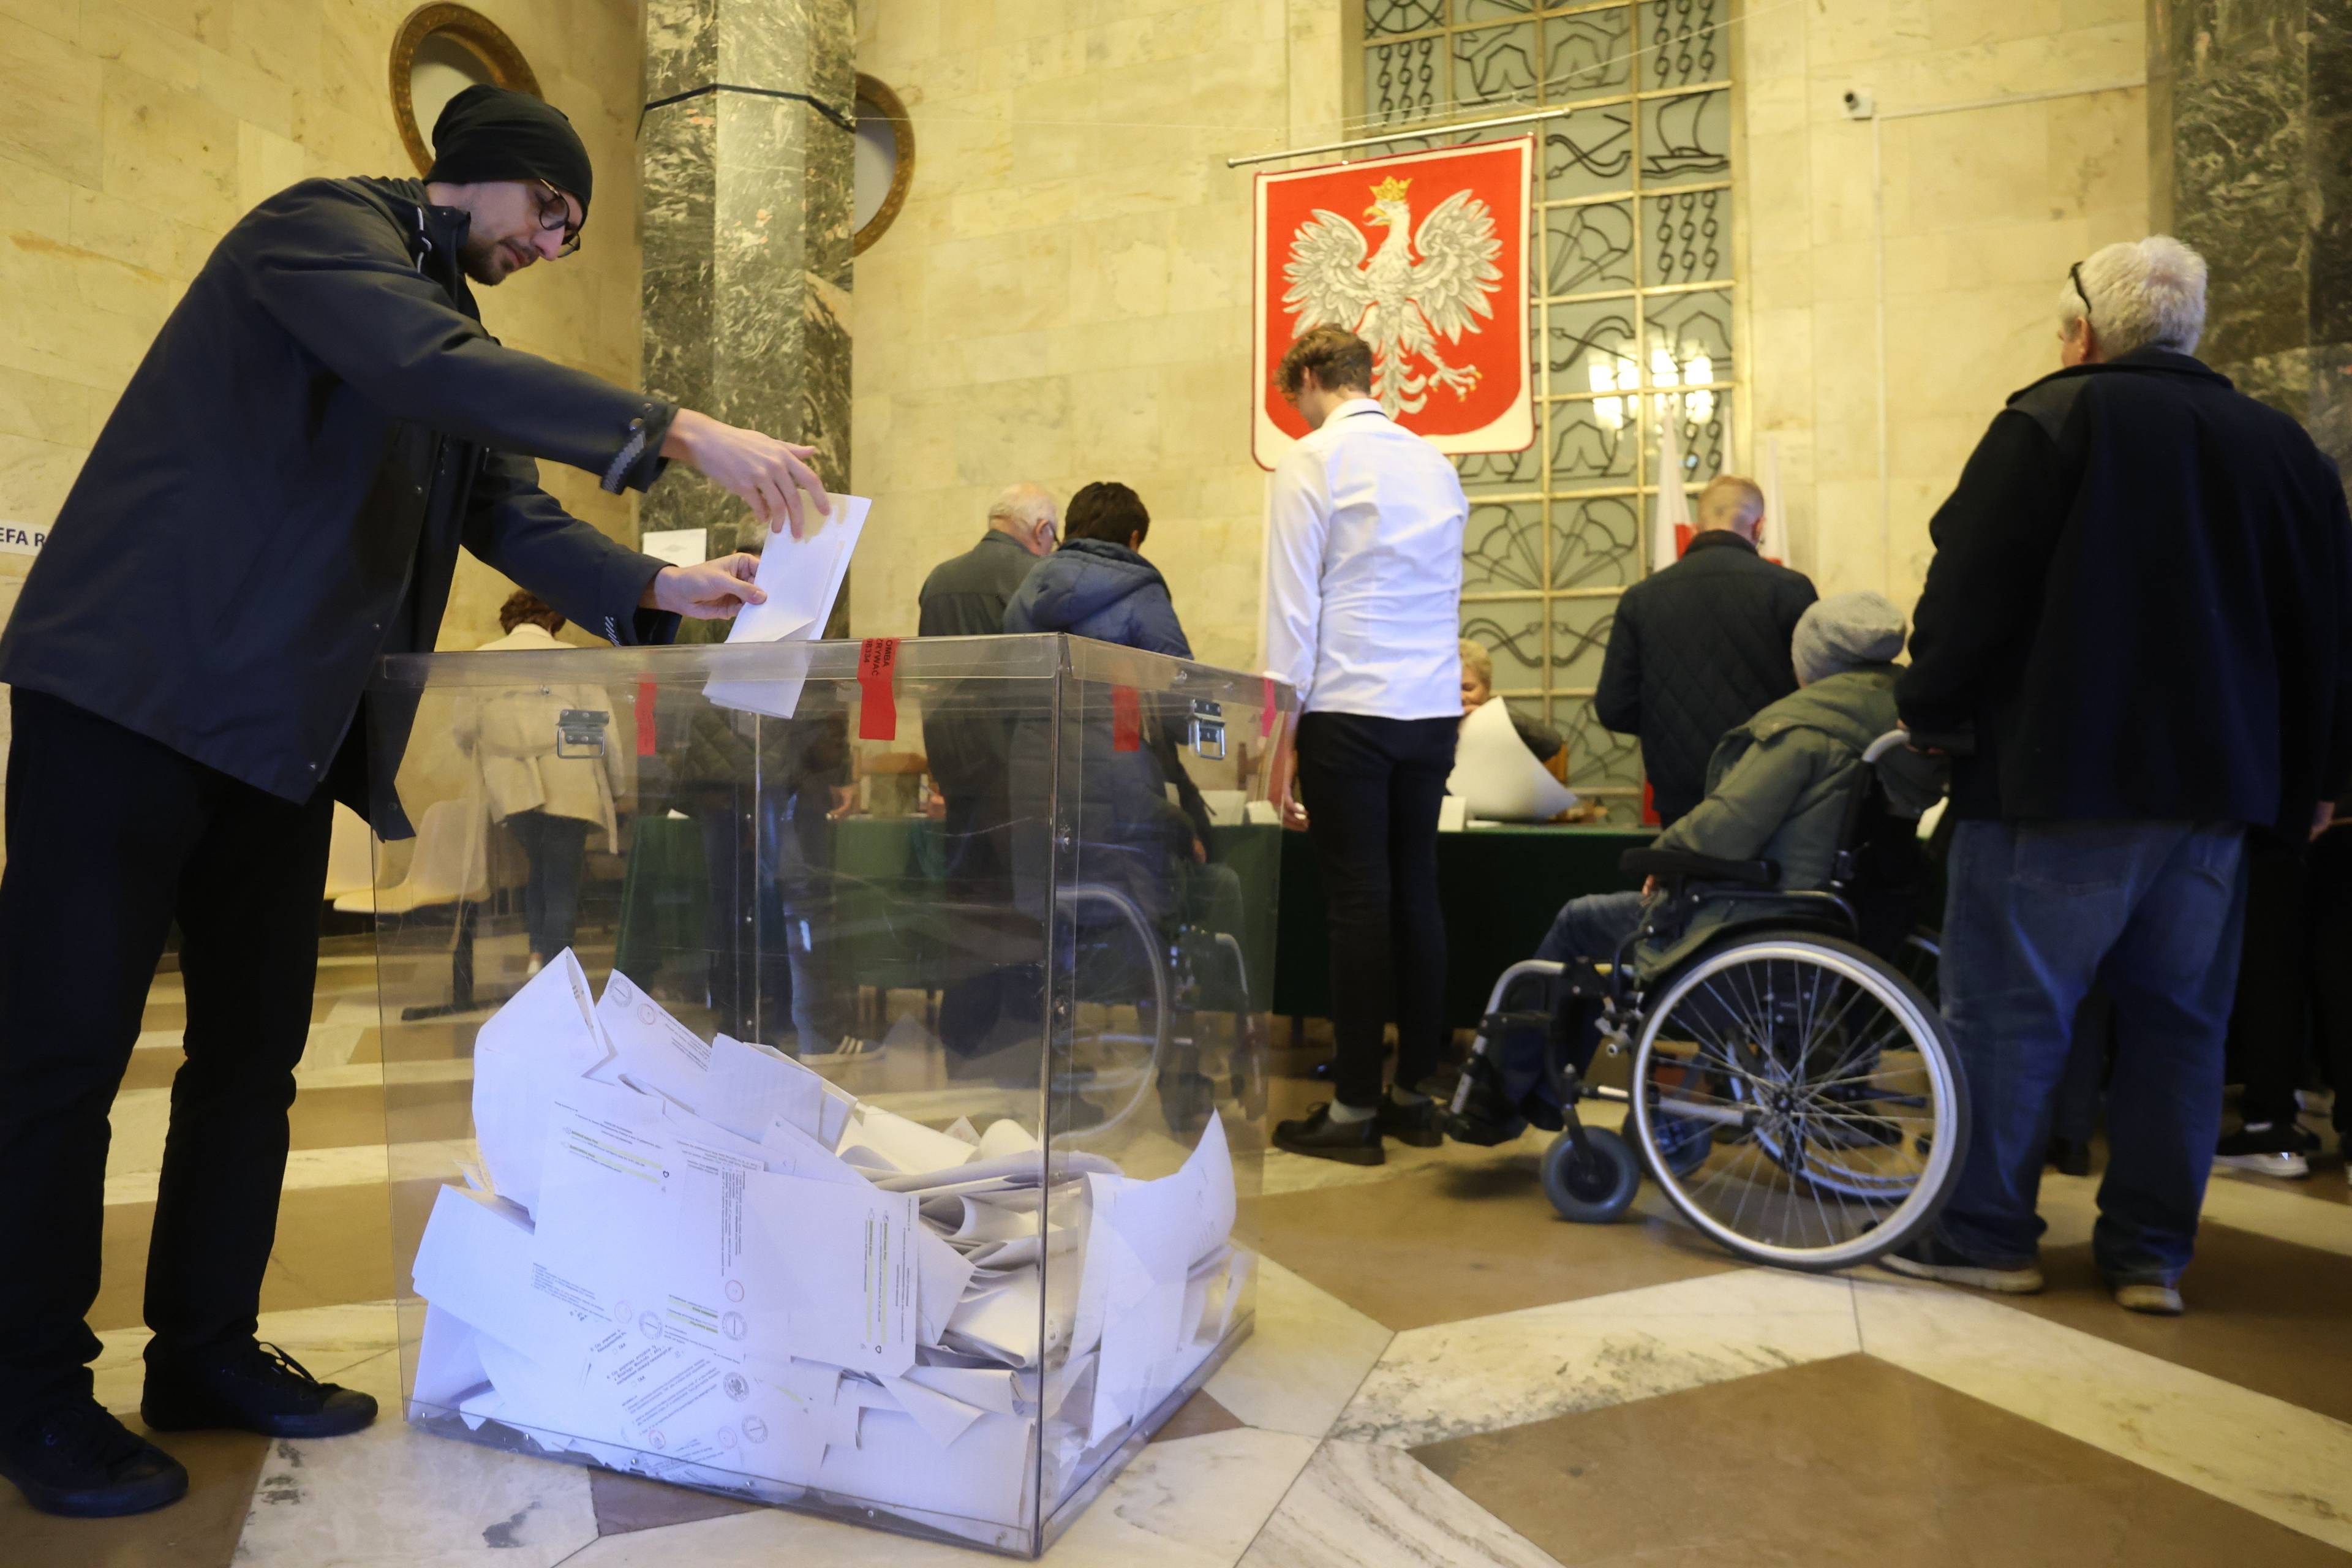 Komisja wyborcza. Mężczyzna wrzucający kartę do urny, w tle kolejka po karty do głosowania, w niej osoba na wózku inwalidzkim